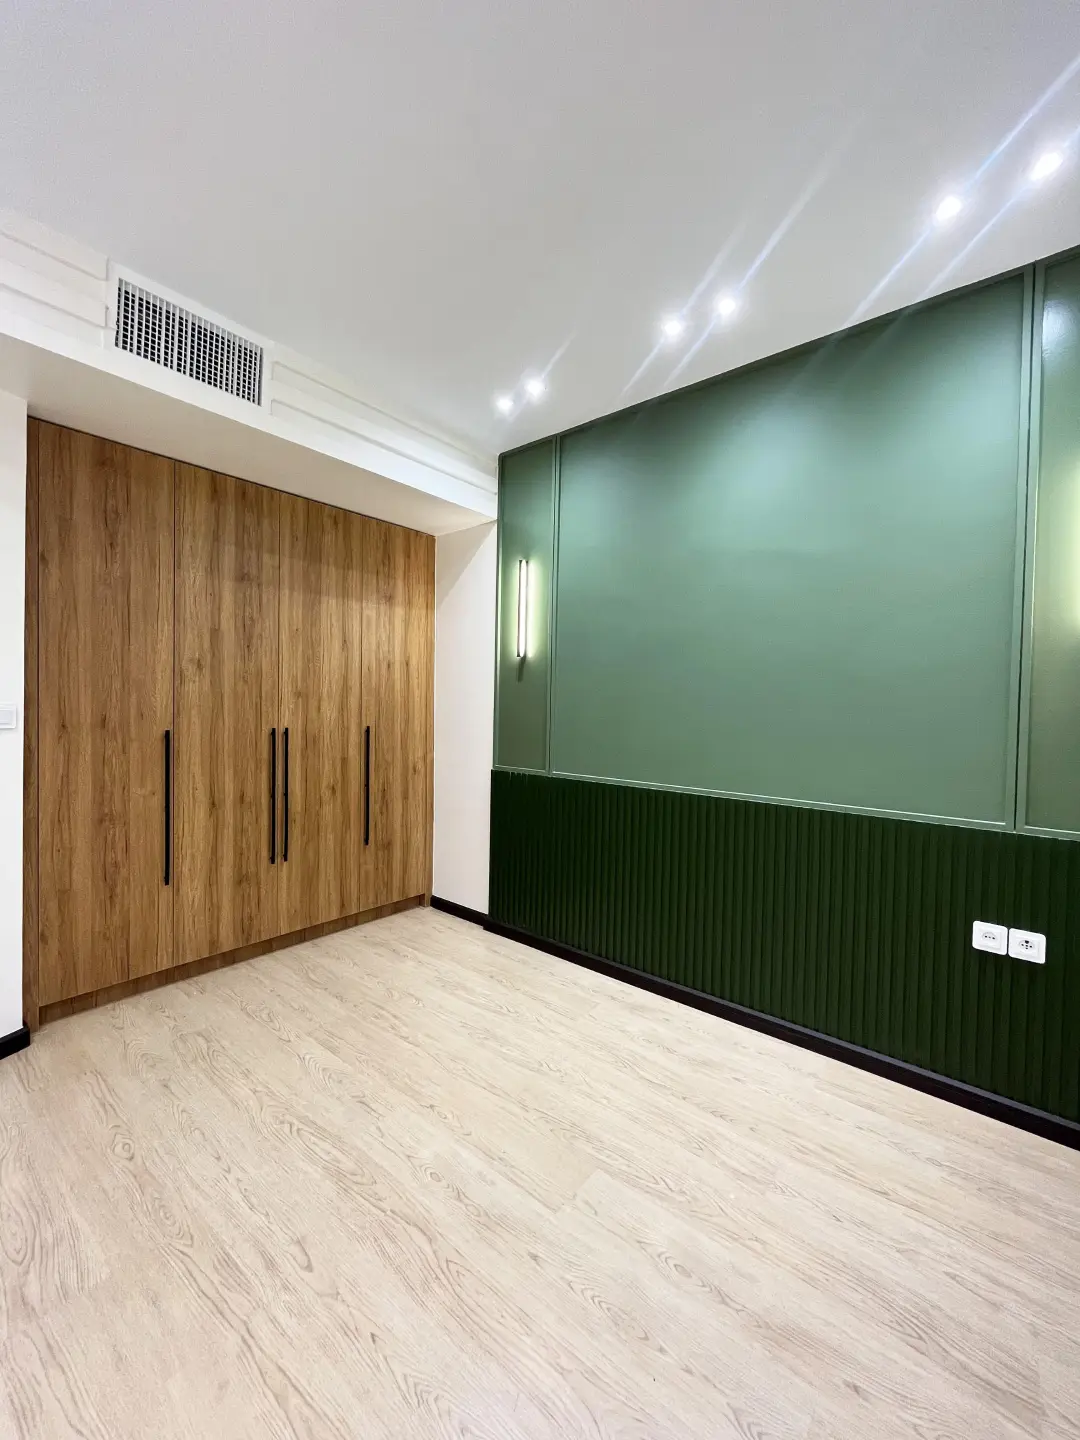 اتاق خواب با دیوار سبز و کمد دیواری تعبیه شده